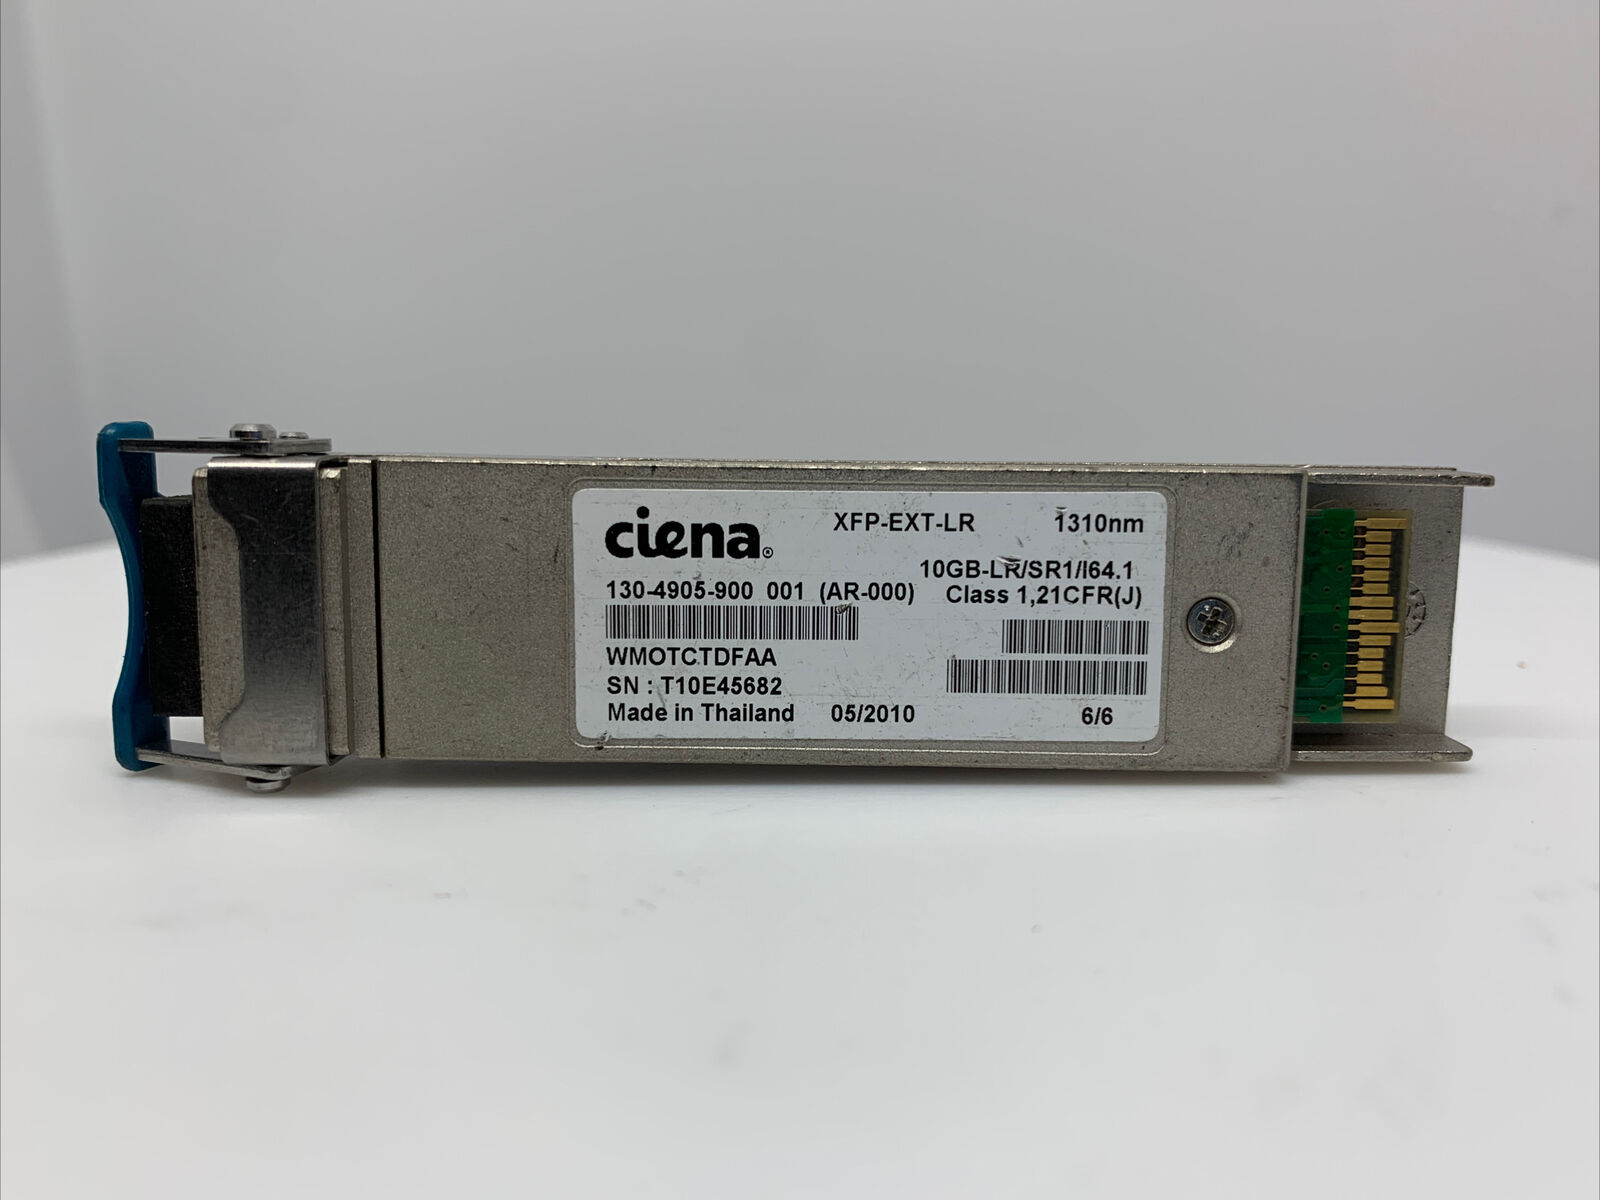 Ciena  XFP-EXT-LR  130-4905-900 XFP 10GB-LR/SR1/I64.1 1310nm 10km  WMOTCTDFAA 